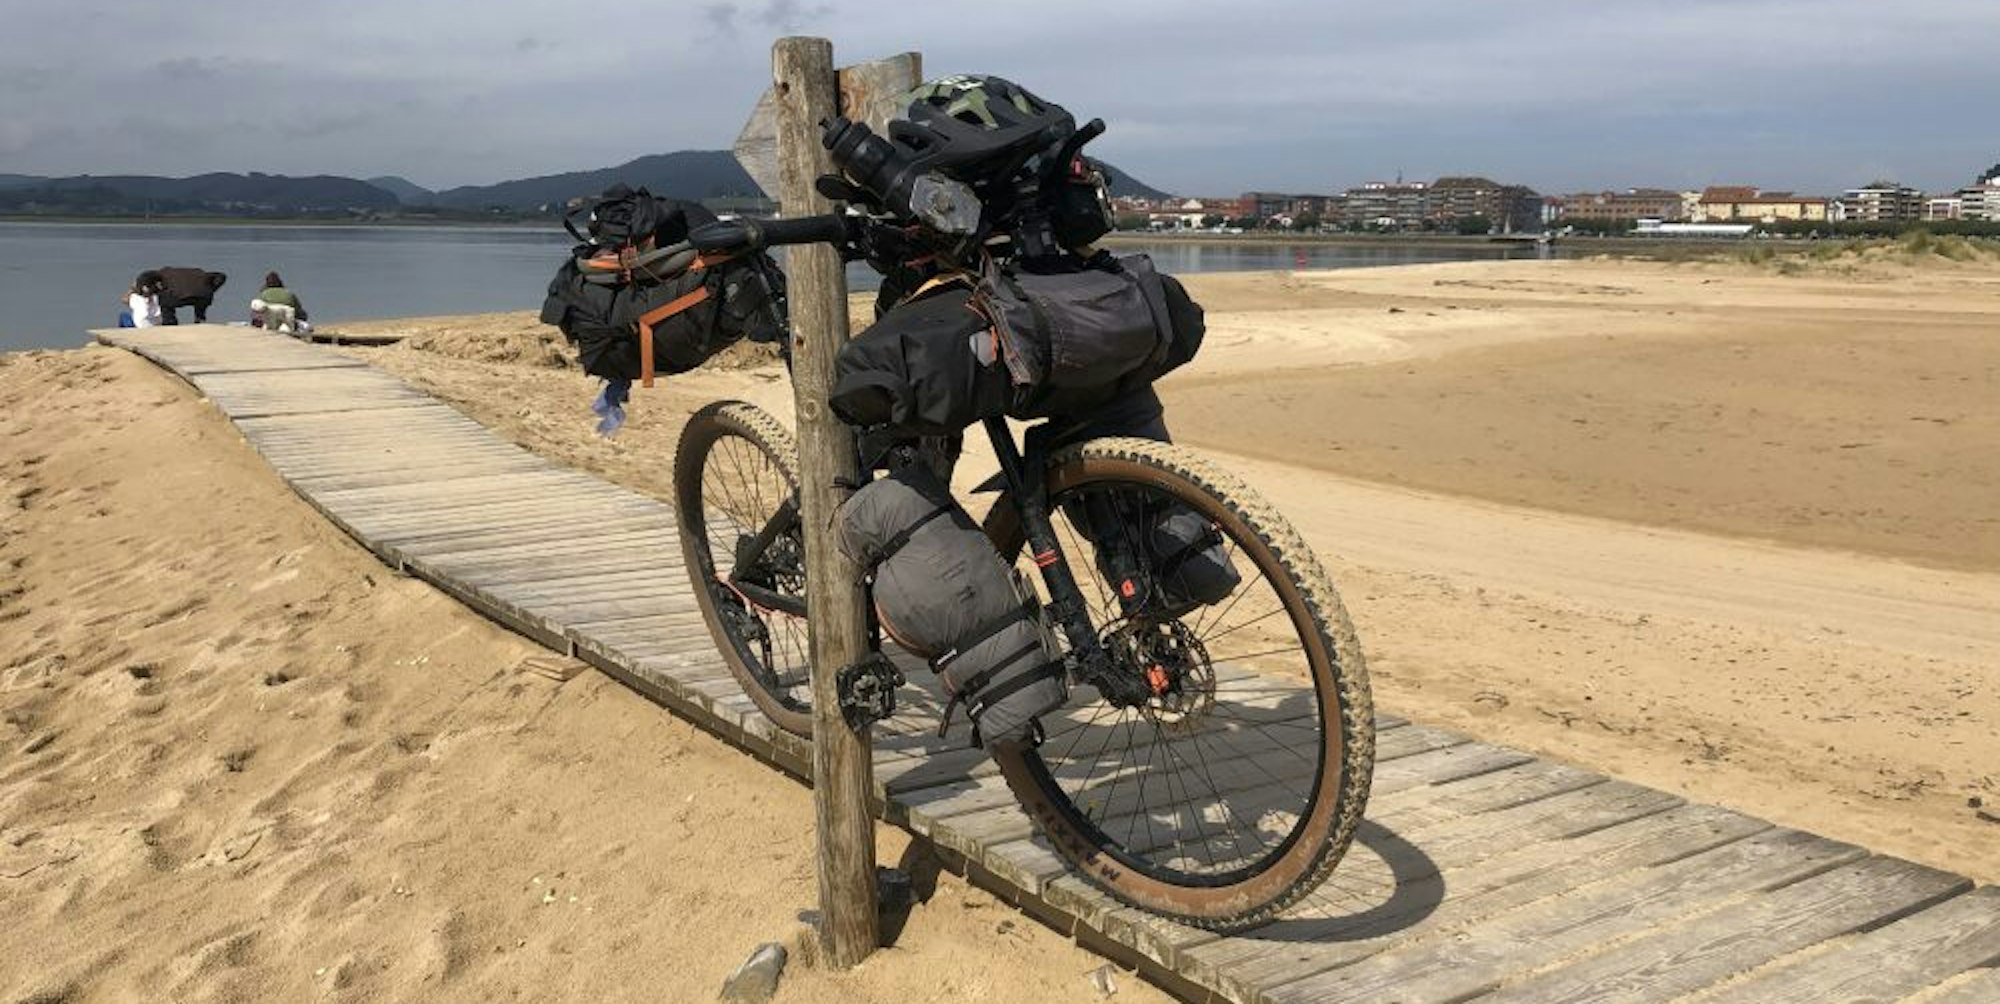 Vor der Ankunft an der portugiesischen Grenze lagen für TH-Student Jannik Reker (29) mehrere Wochen auf dem Fahrrad und jede Menge Eindrücke.